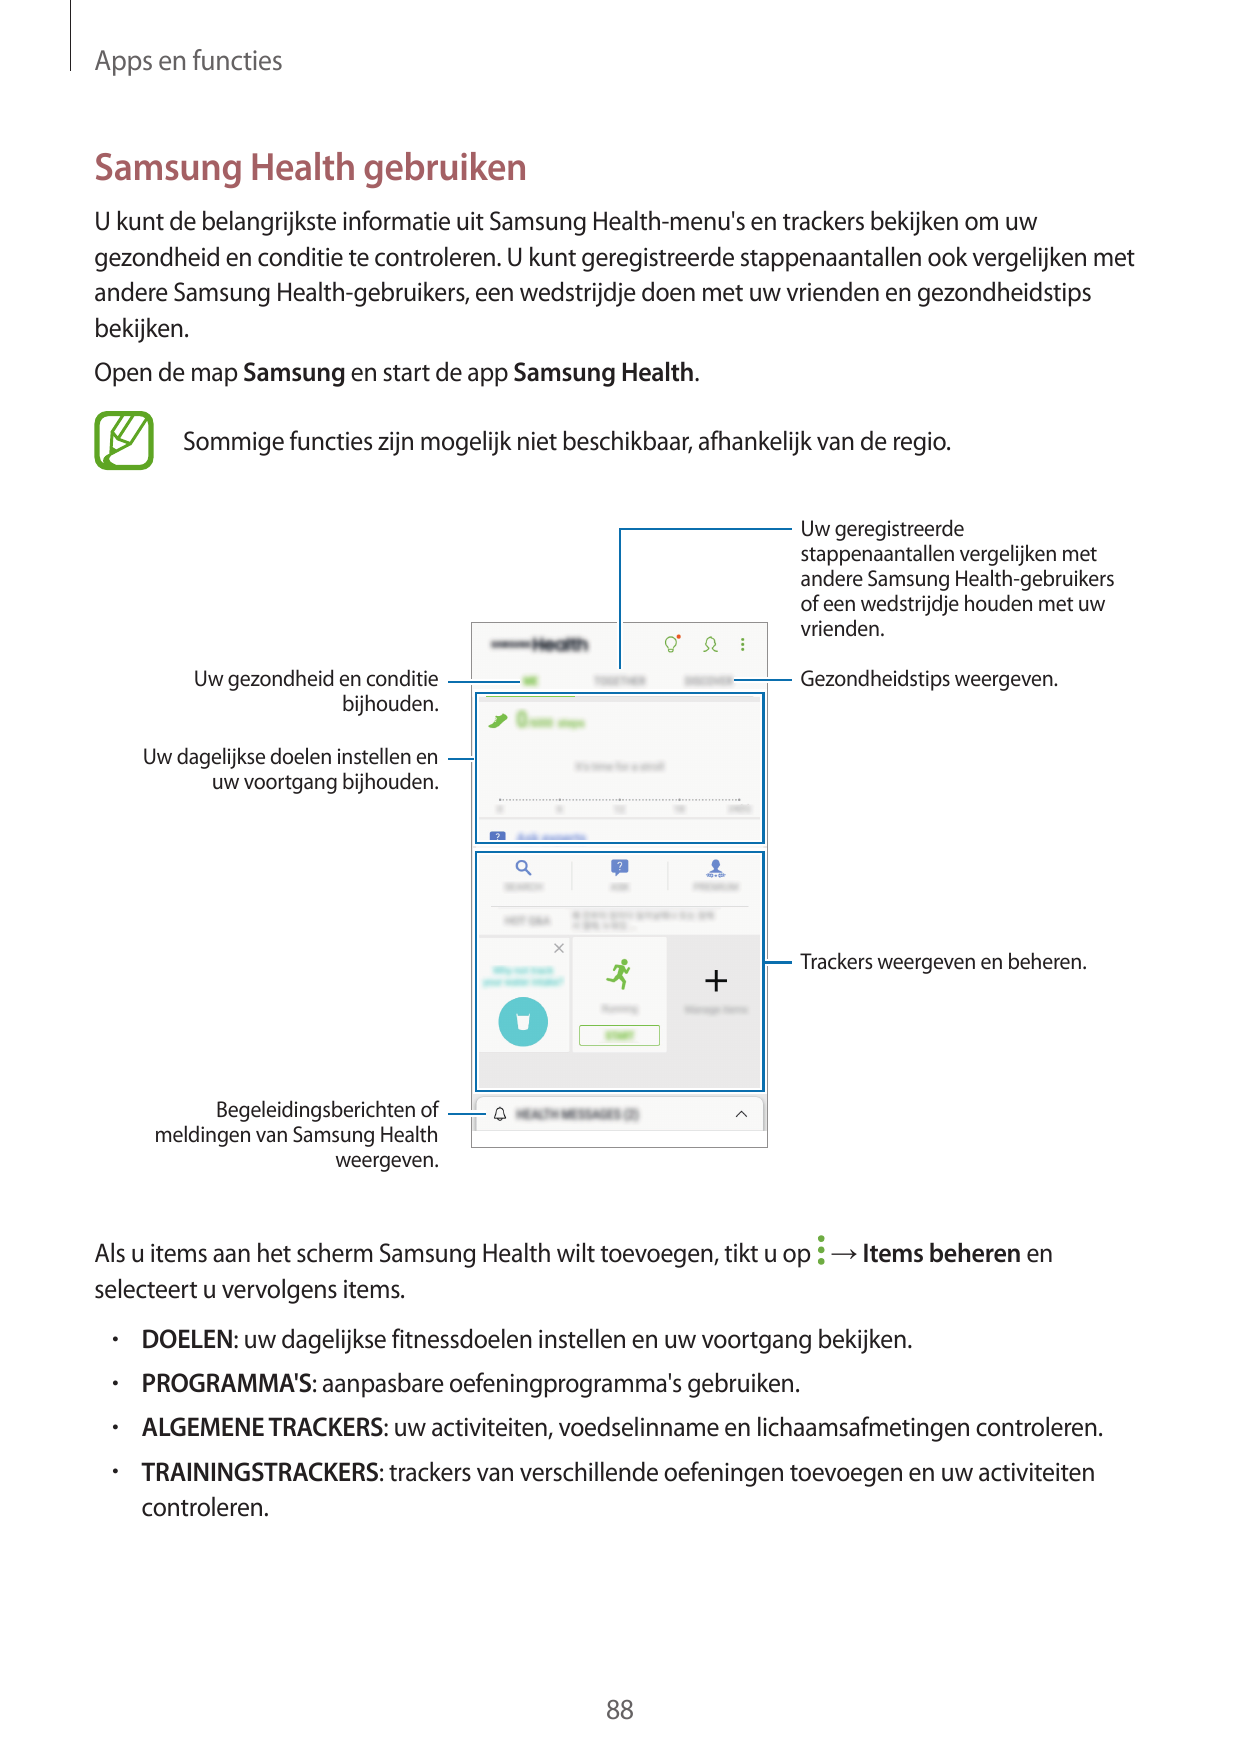 Apps en functiesSamsung Health gebruikenU kunt de belangrijkste informatie uit Samsung Health-menu's en trackers bekijken om uwg